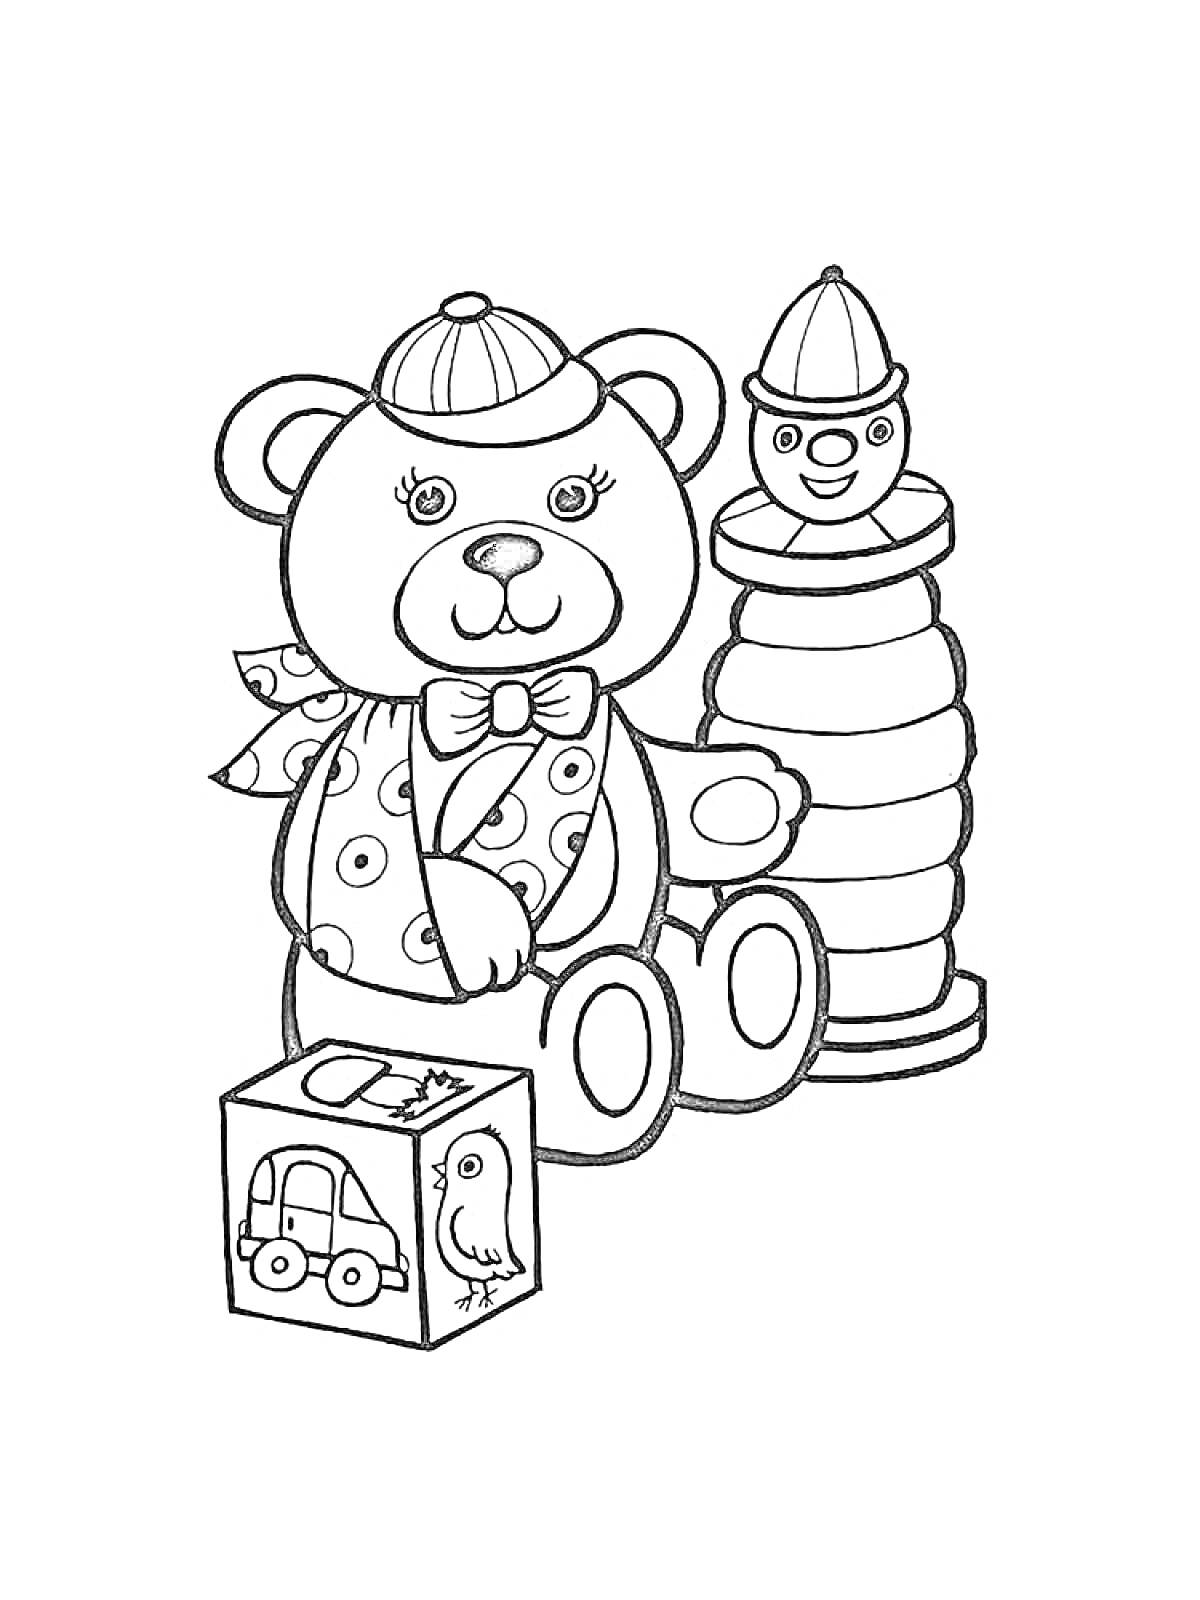 Раскраска Медвежонок в шапочке с шарфом, кубик с изображениями и пирамидка с головой клоуна